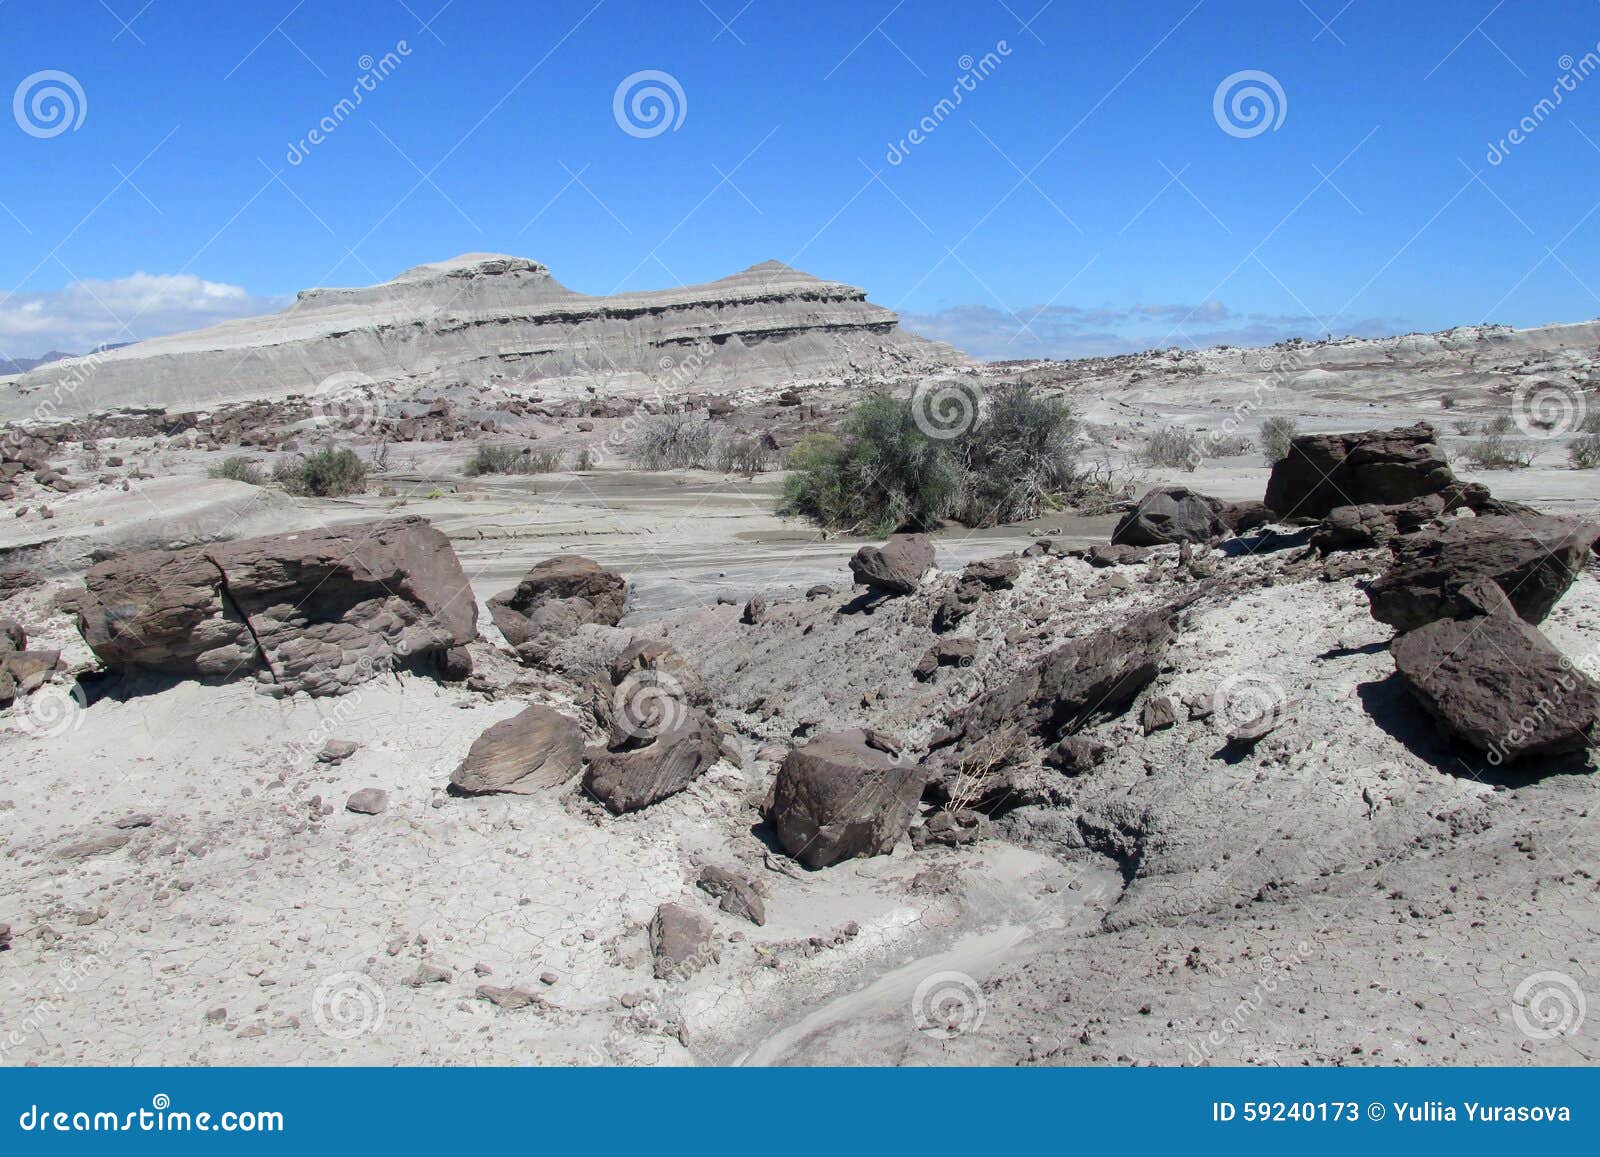 gray stone desert